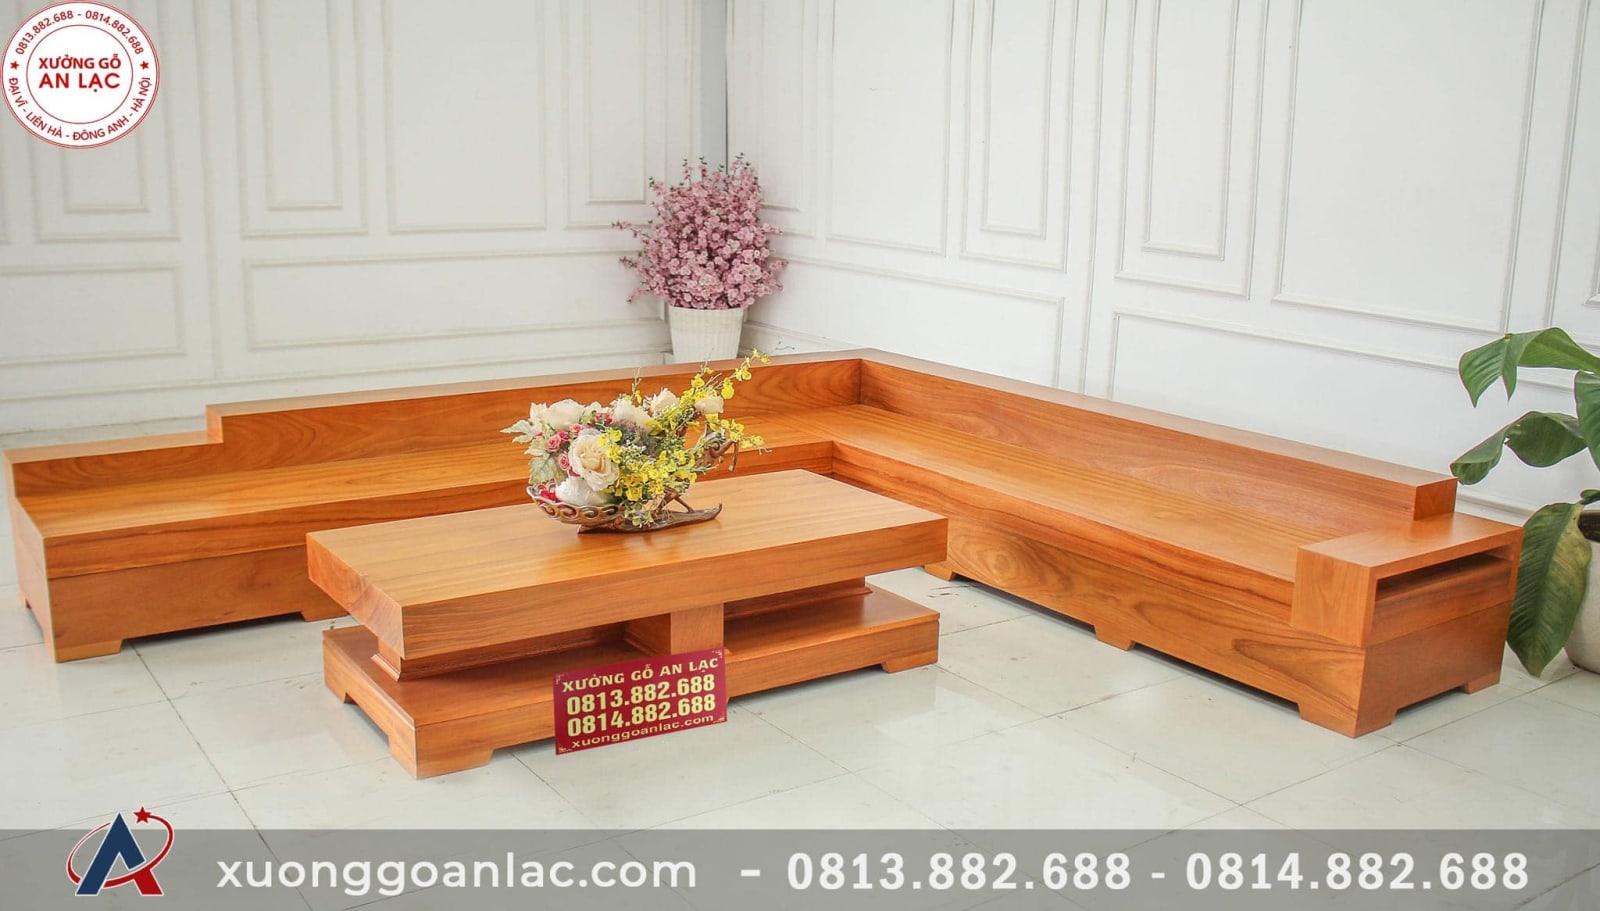 Với chất liệu gỗ gõ đỏ nguyên khối, bộ sofa chữ L này là một lựa chọn tuyệt vời cho một phòng khách đẳng cấp vào năm